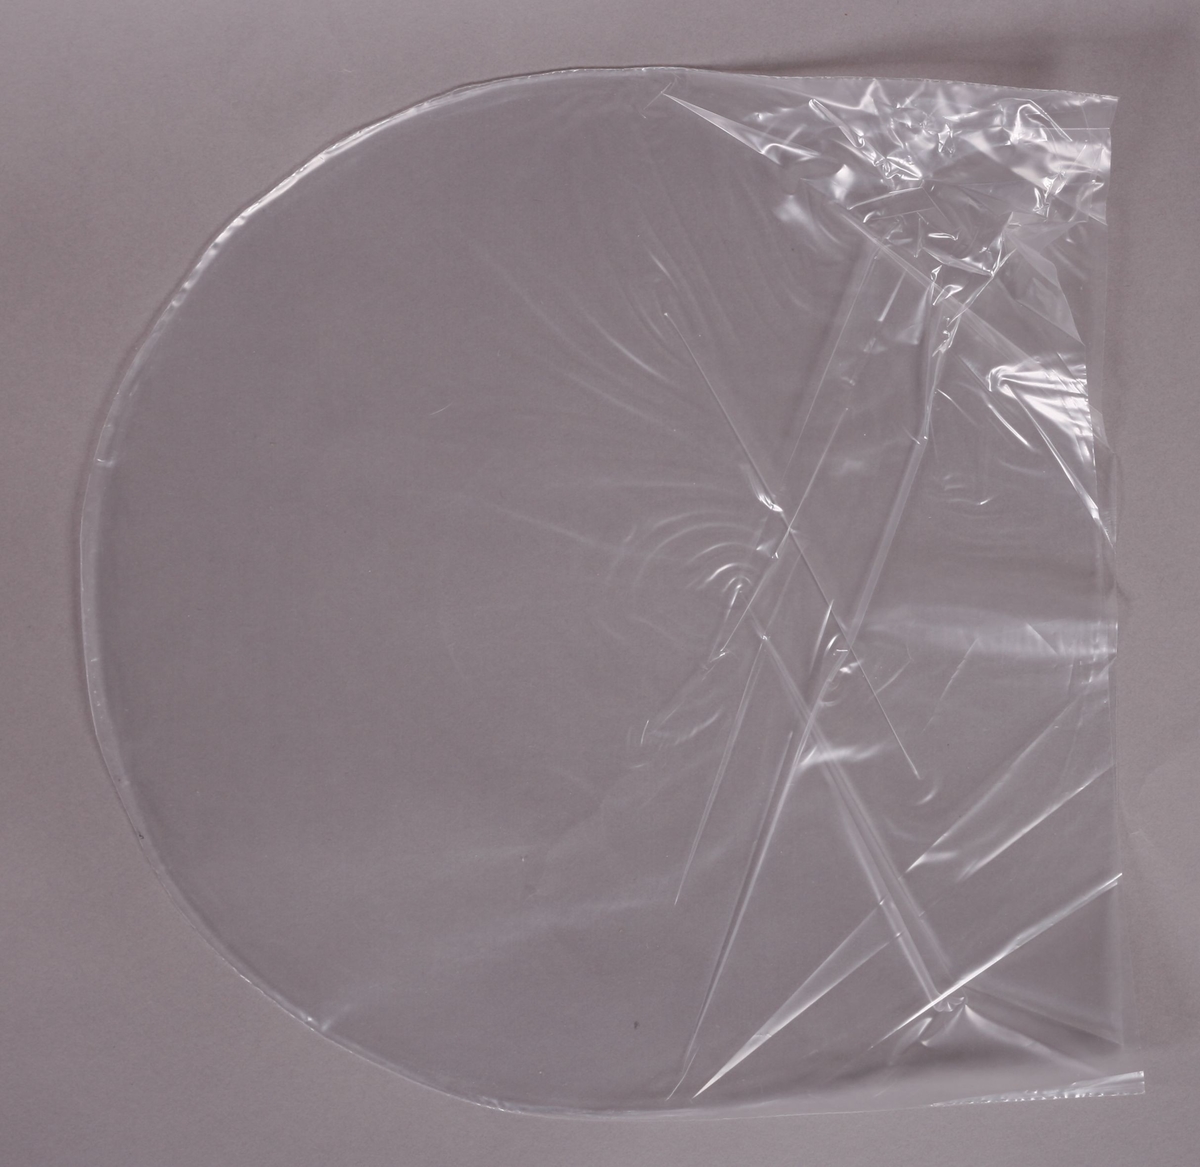 Grammofonplate i svart vinyl og plateomslag i papp med omslagscover av plast. Ligger med en utgave av baksiden som er oversatt til engelsk (se bilde). Platen ligger i en plastlomme.